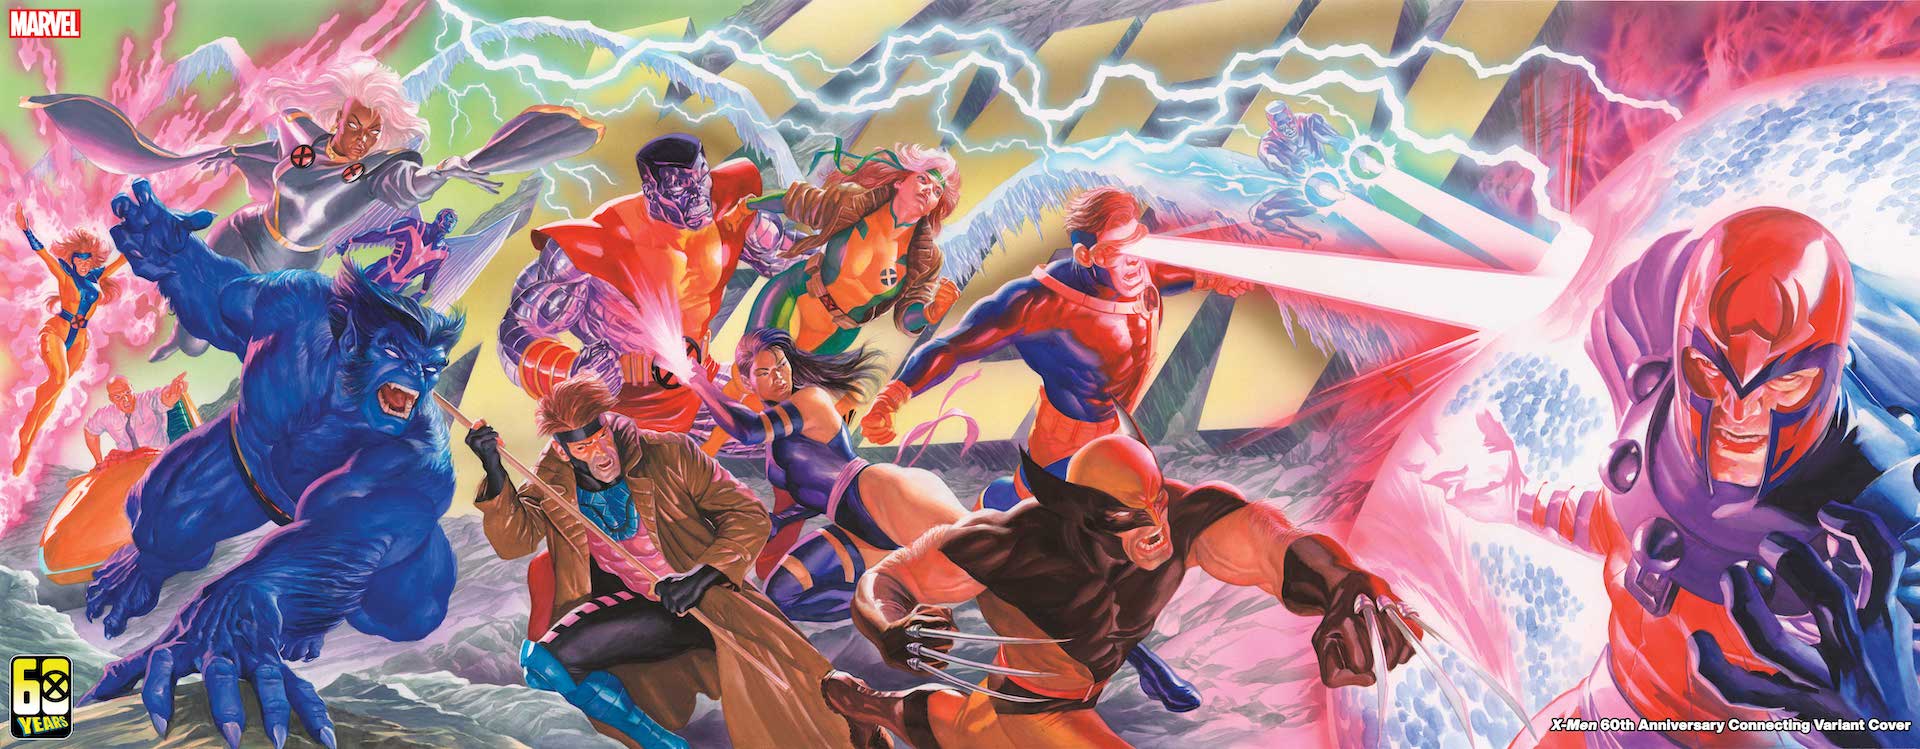 Editor Tom Brevoort signals a big shakeup coming for X-Men comics